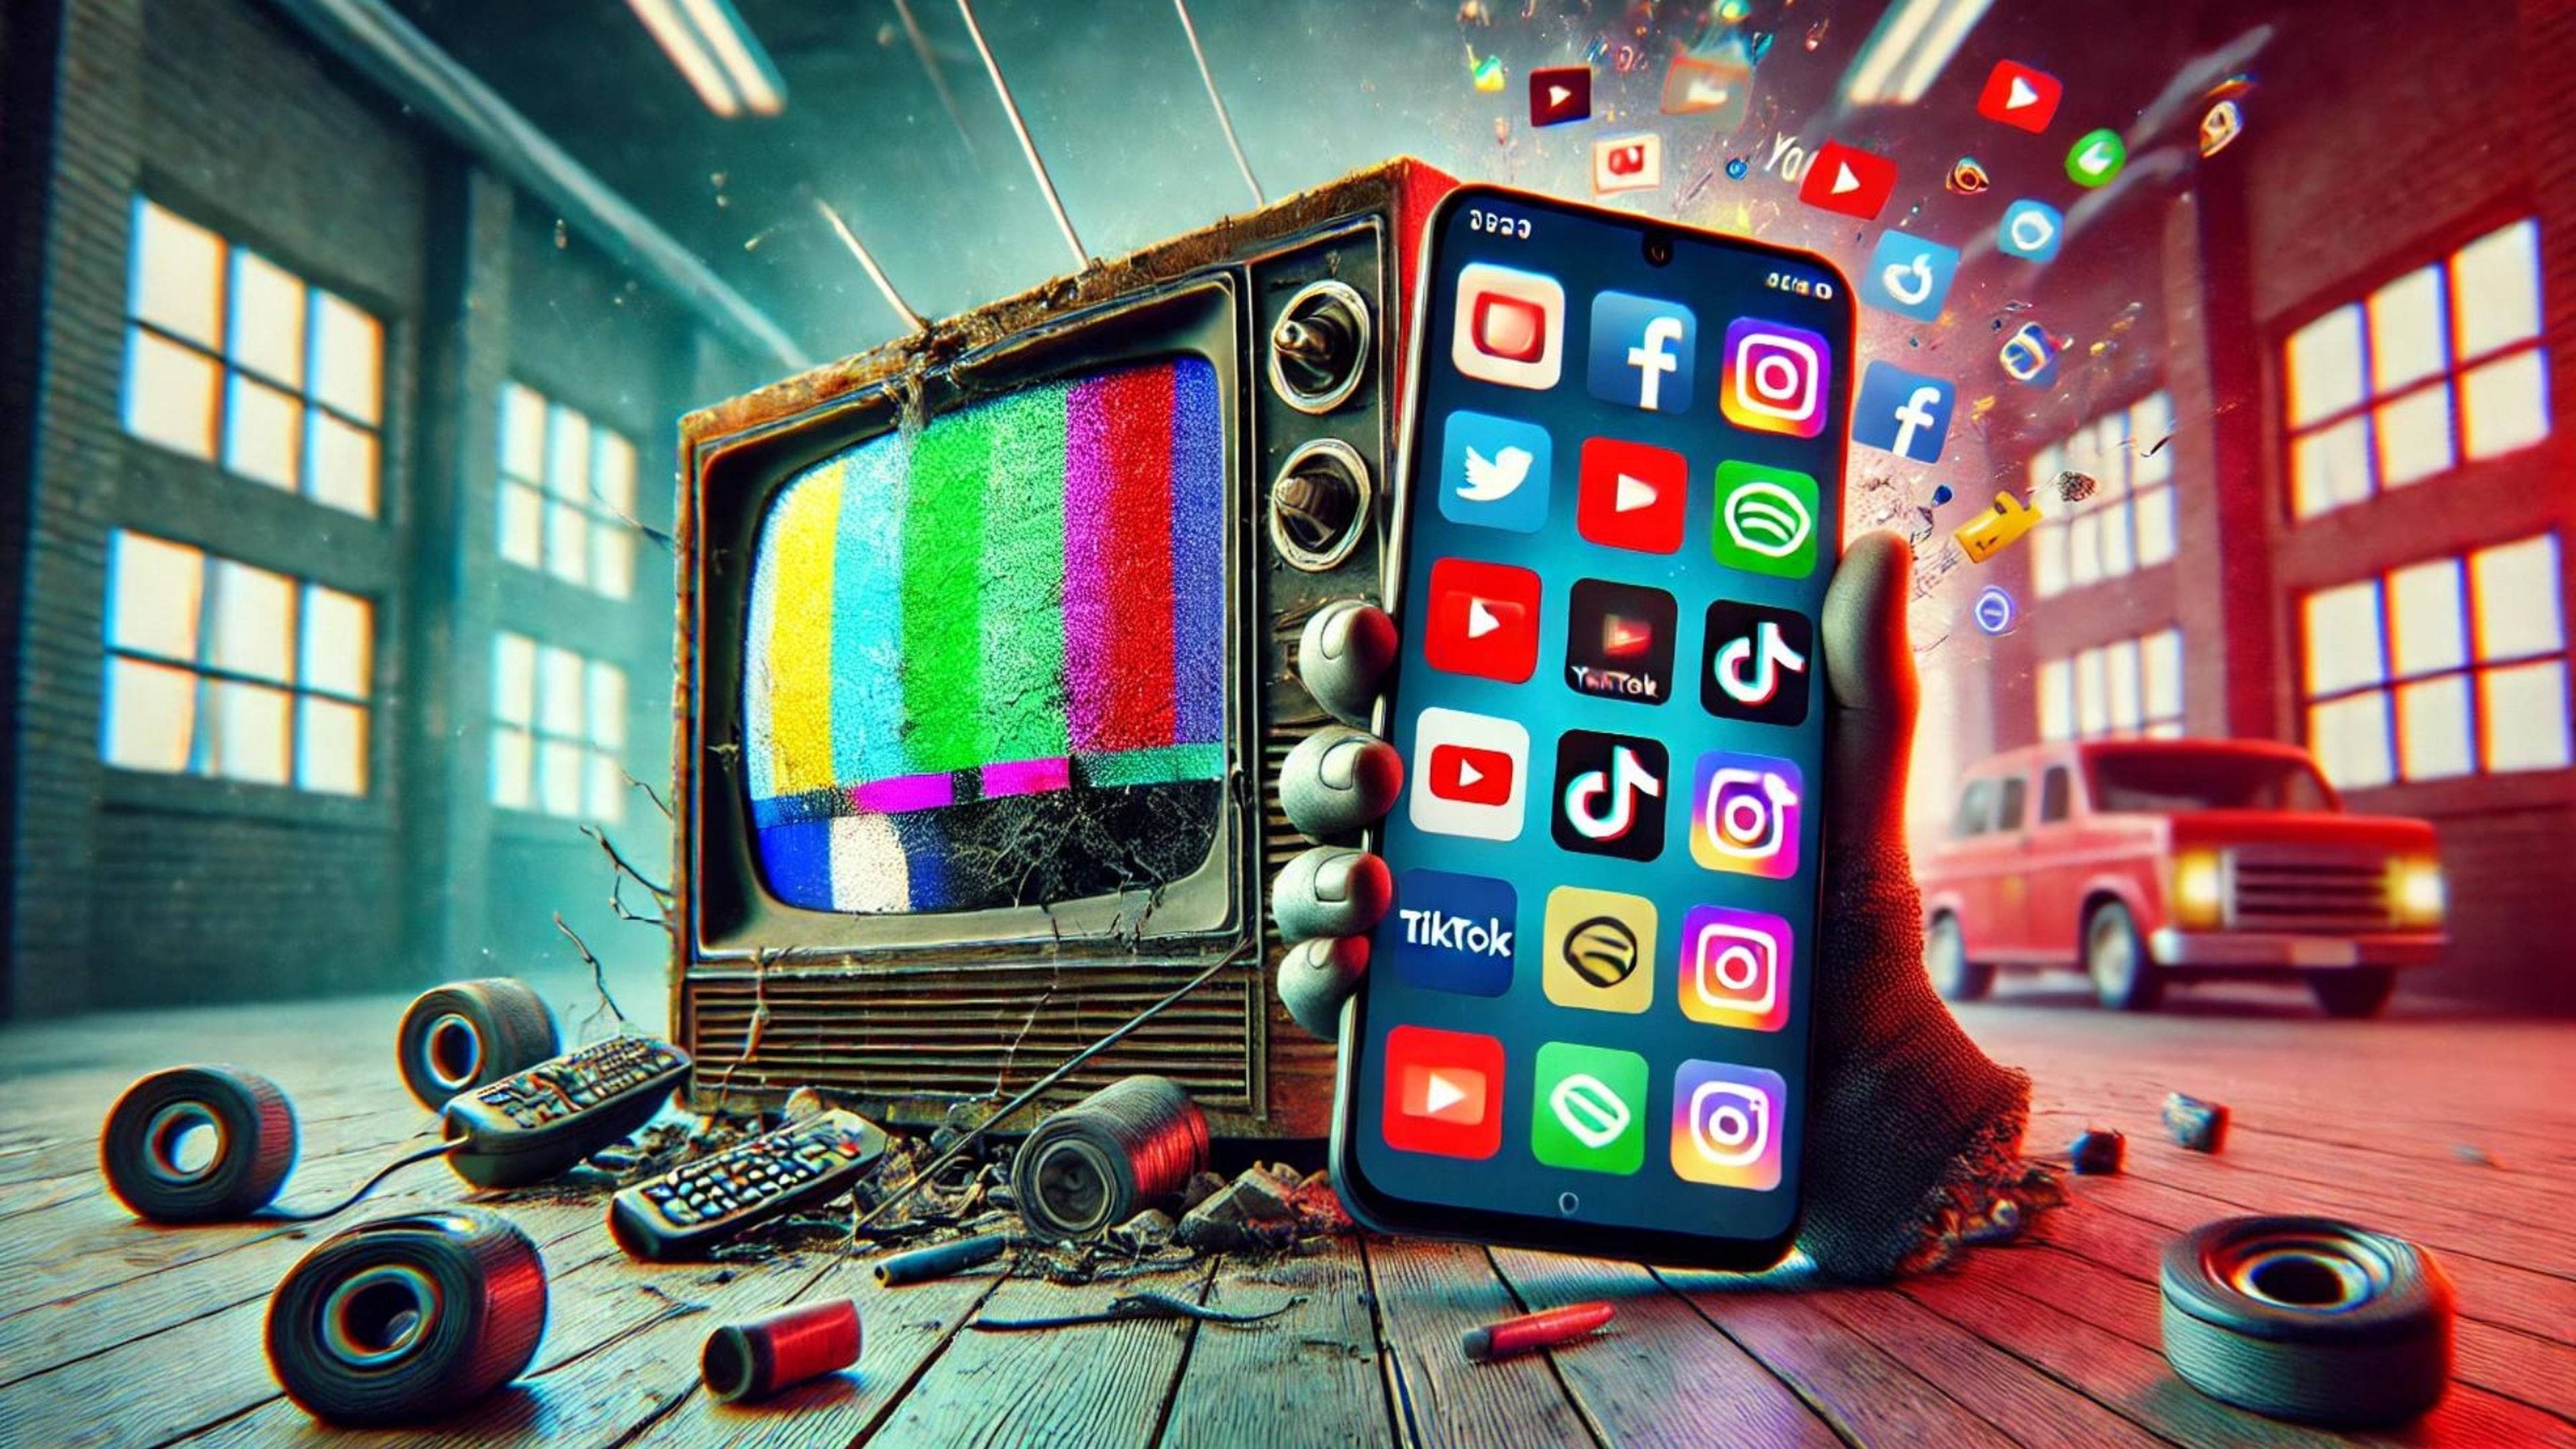 La era de la TV ha terminado: el presente y futuro del entretenimiento está en tu bolsillo